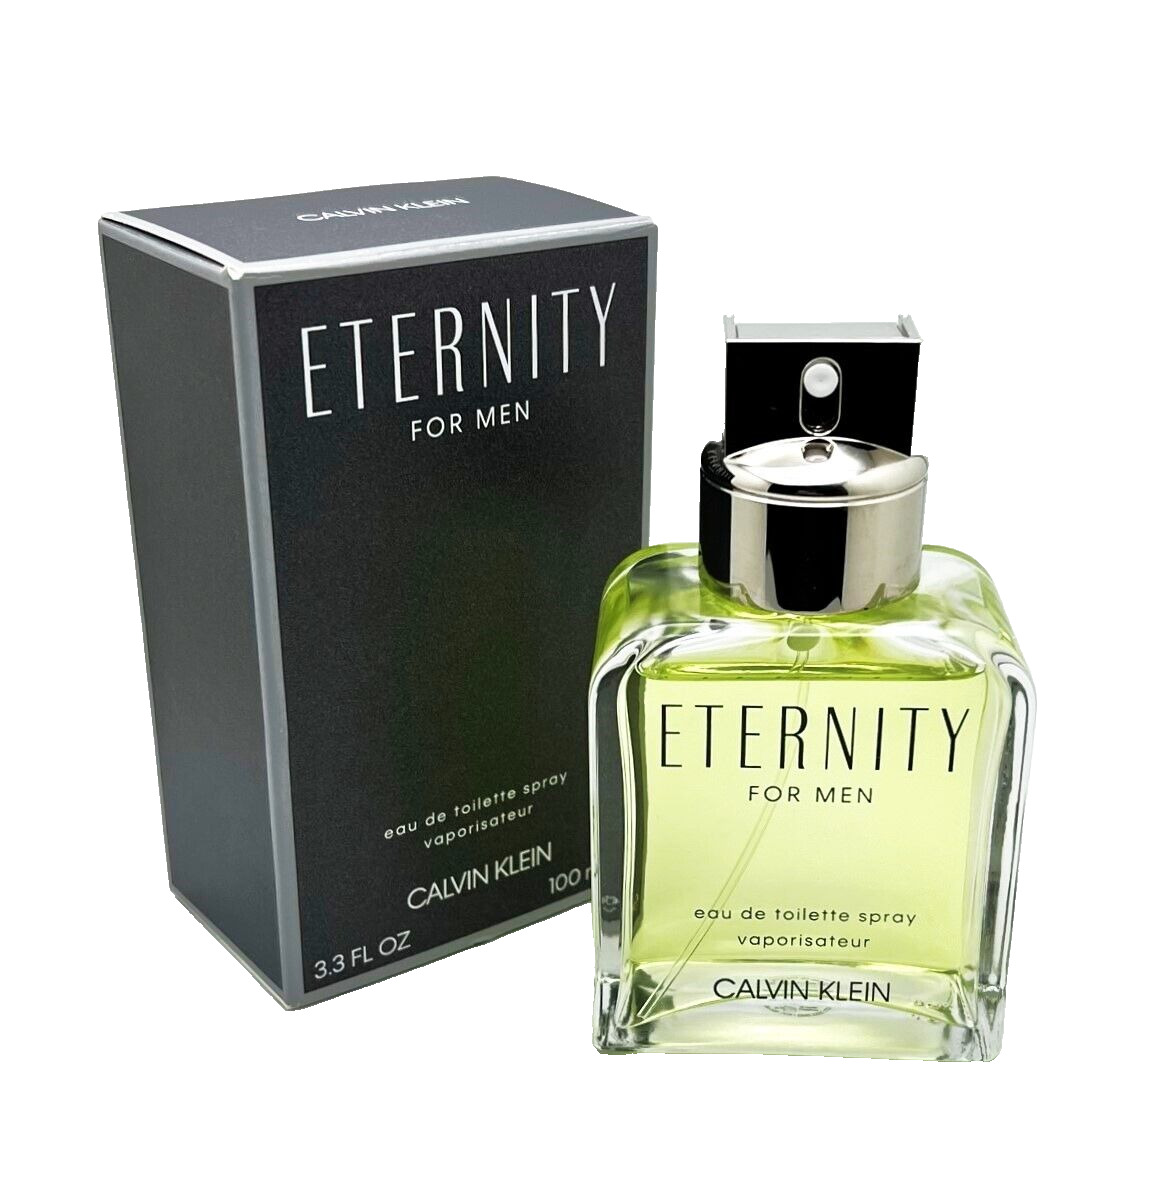 Calvin Klein Eternity For Men 3.4 oz EDT Fragrance Cologne Spray